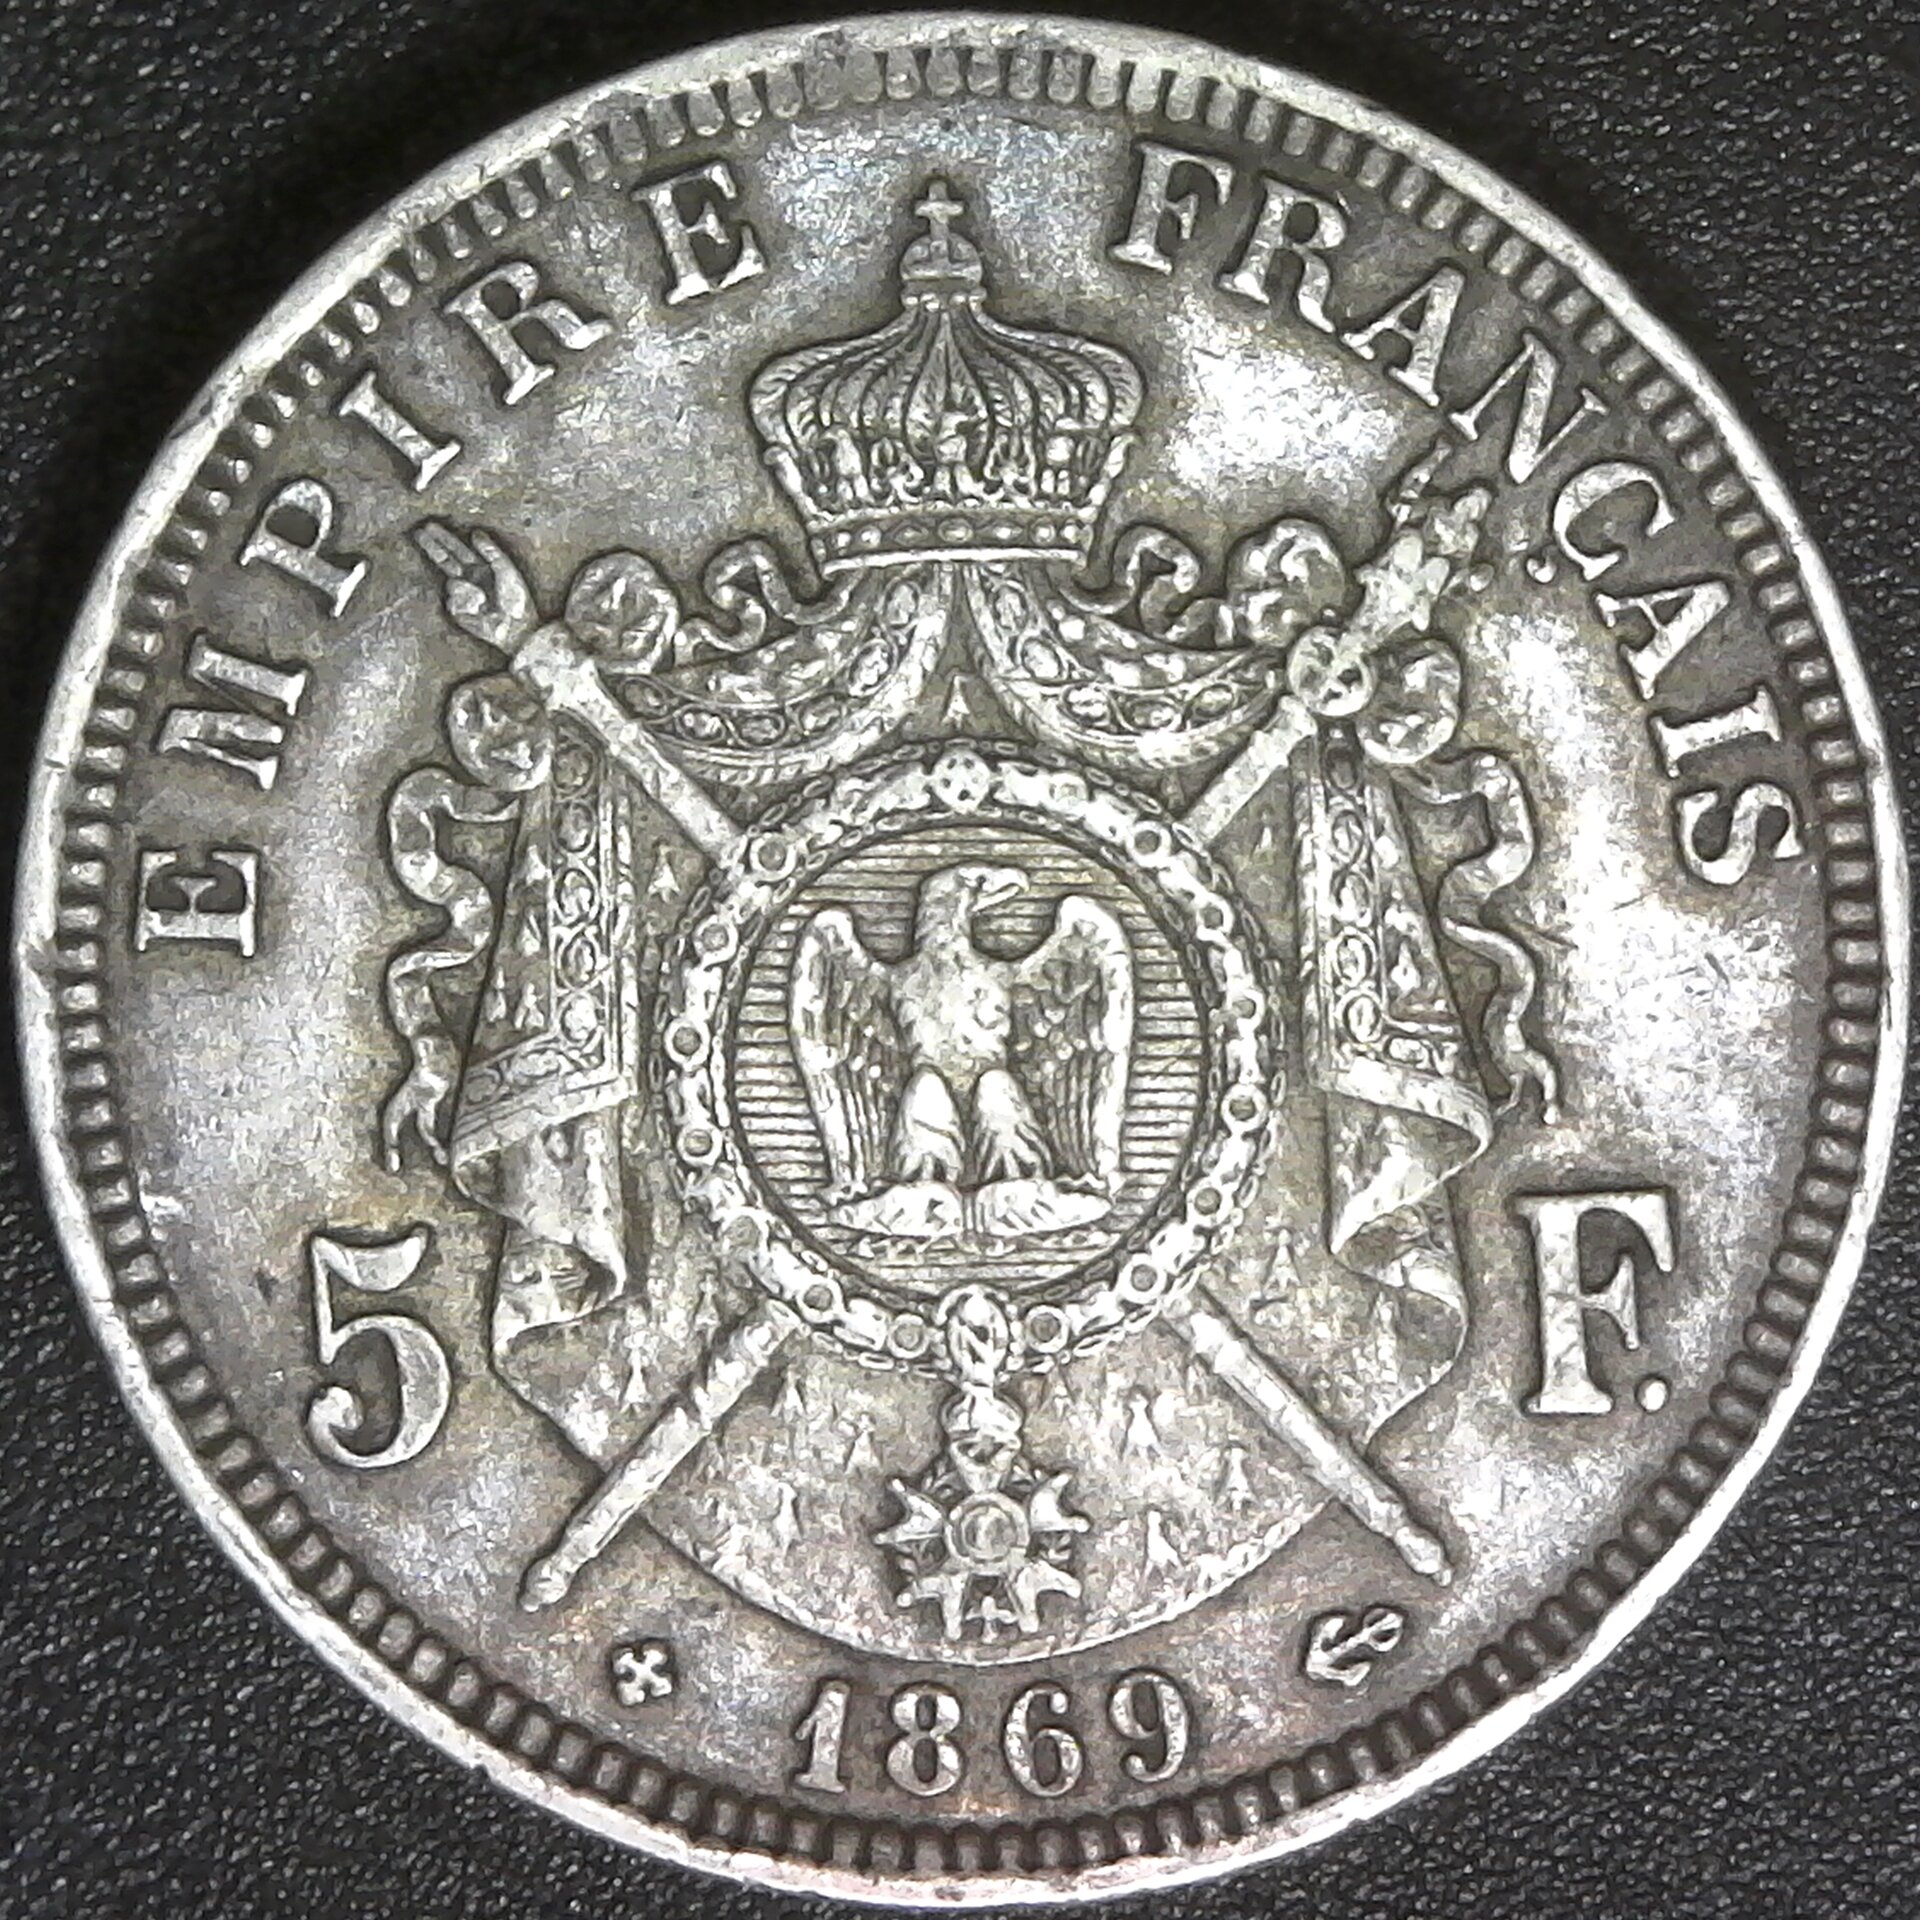 France 5 Francs 1869 obverse.jpg